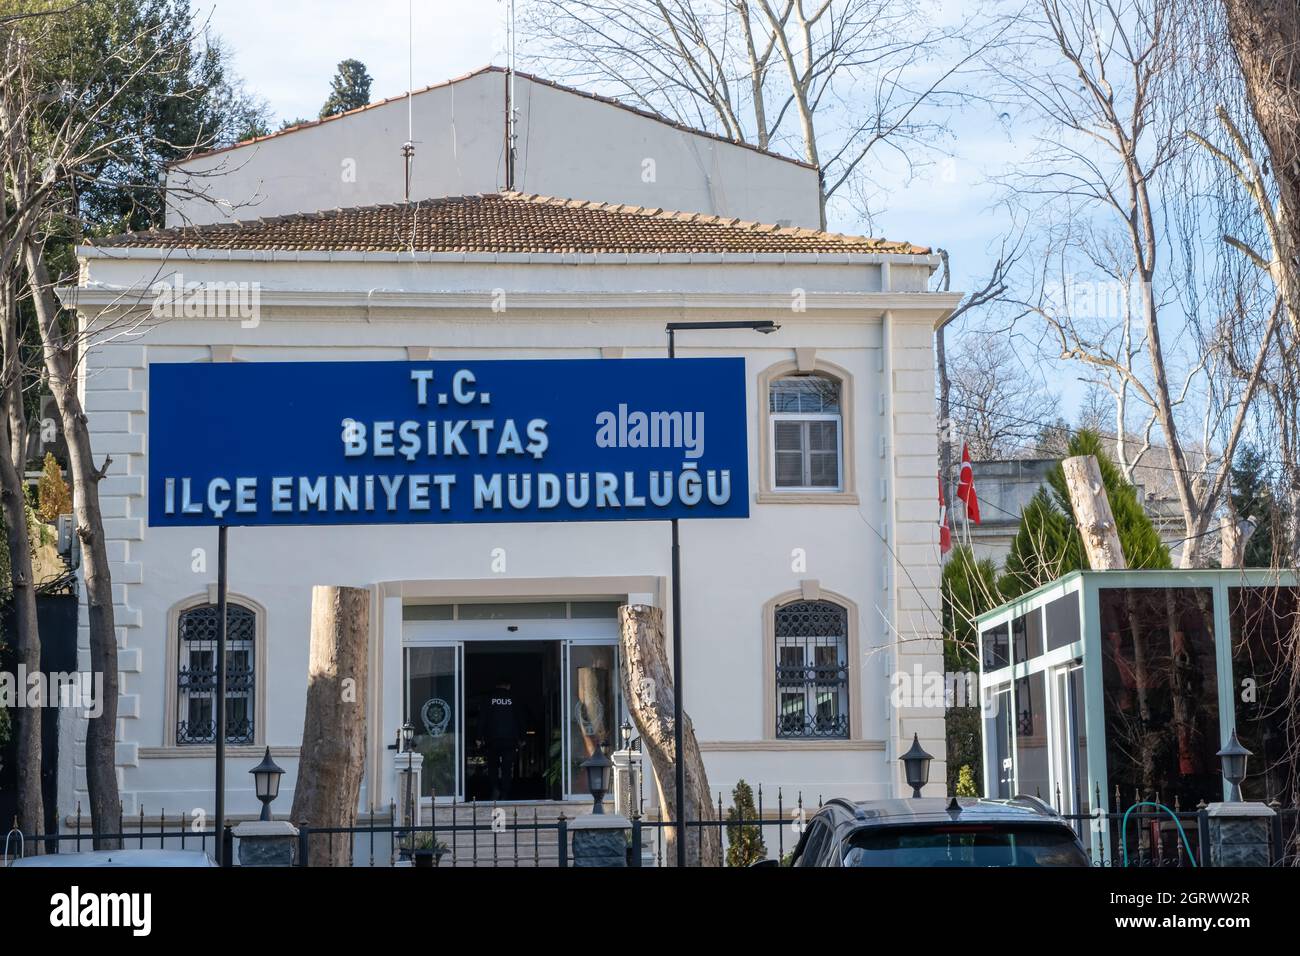 Außenansicht der historisch aussehenden Besiktas (türkisch; Beşiktaş) Polizeiwache, die sich im Stadtteil Beşiktaş von Istanbul, Türkei, befindet. Stockfoto